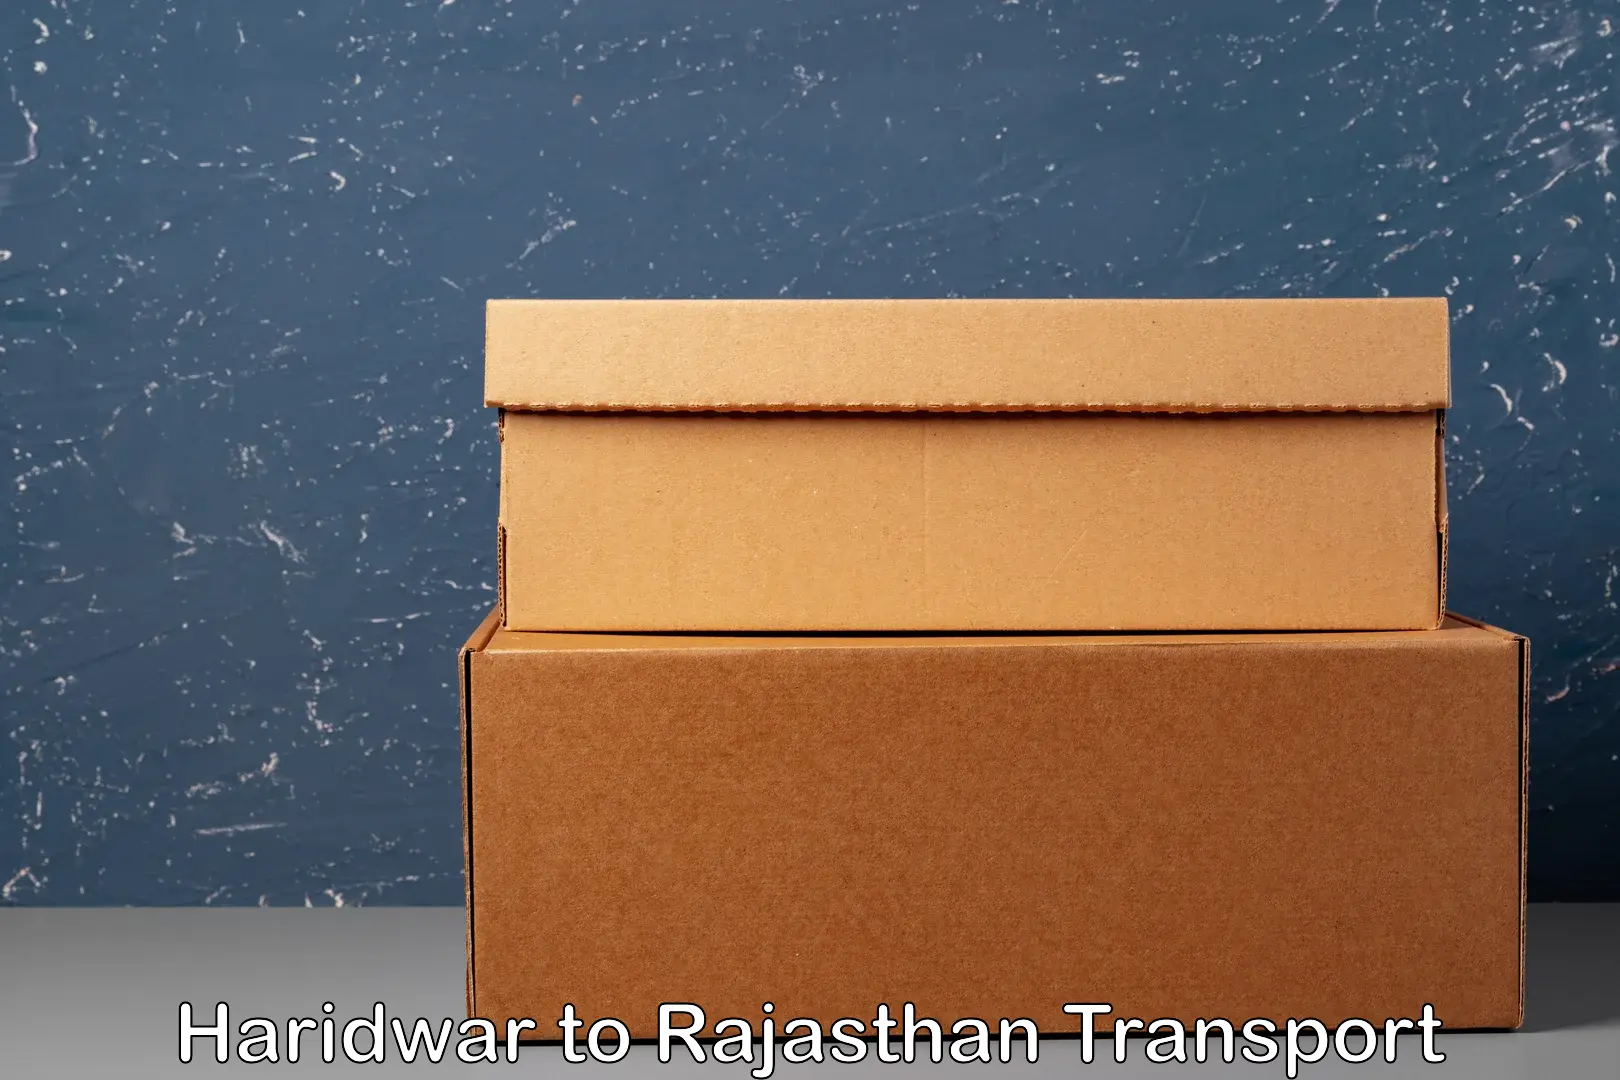 Air freight transport services Haridwar to Alwar